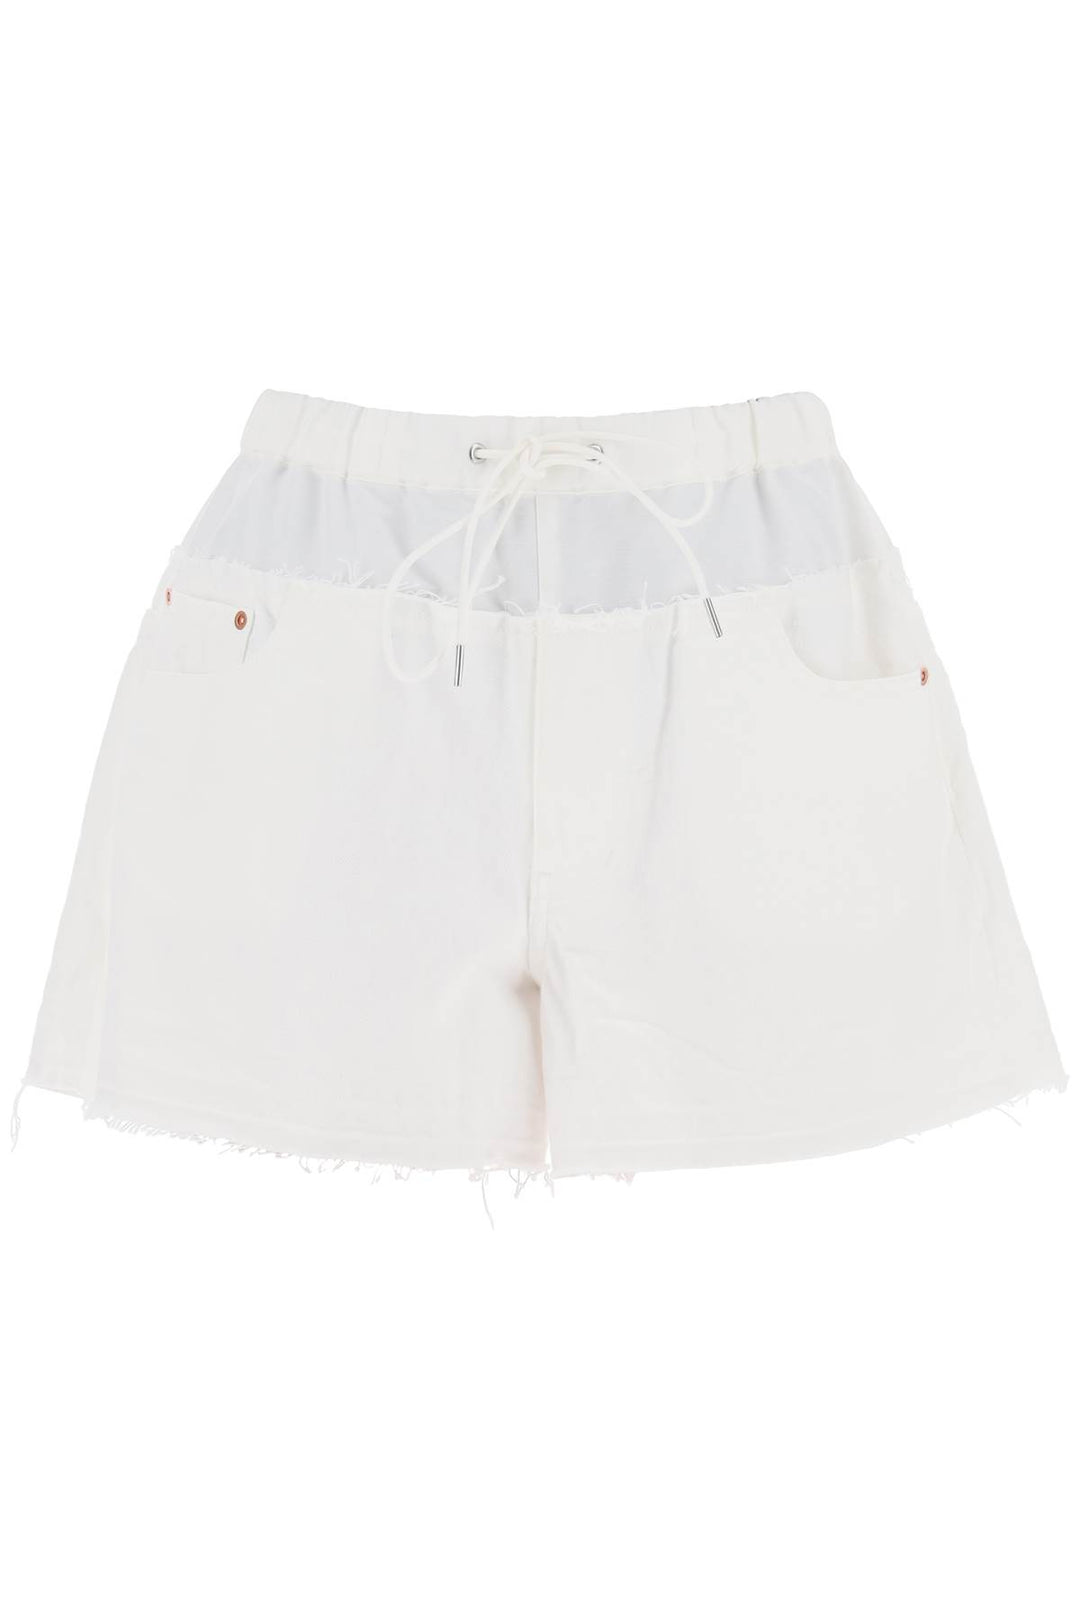 Sacai Hybrid Denim Shorts For Men   Bianco